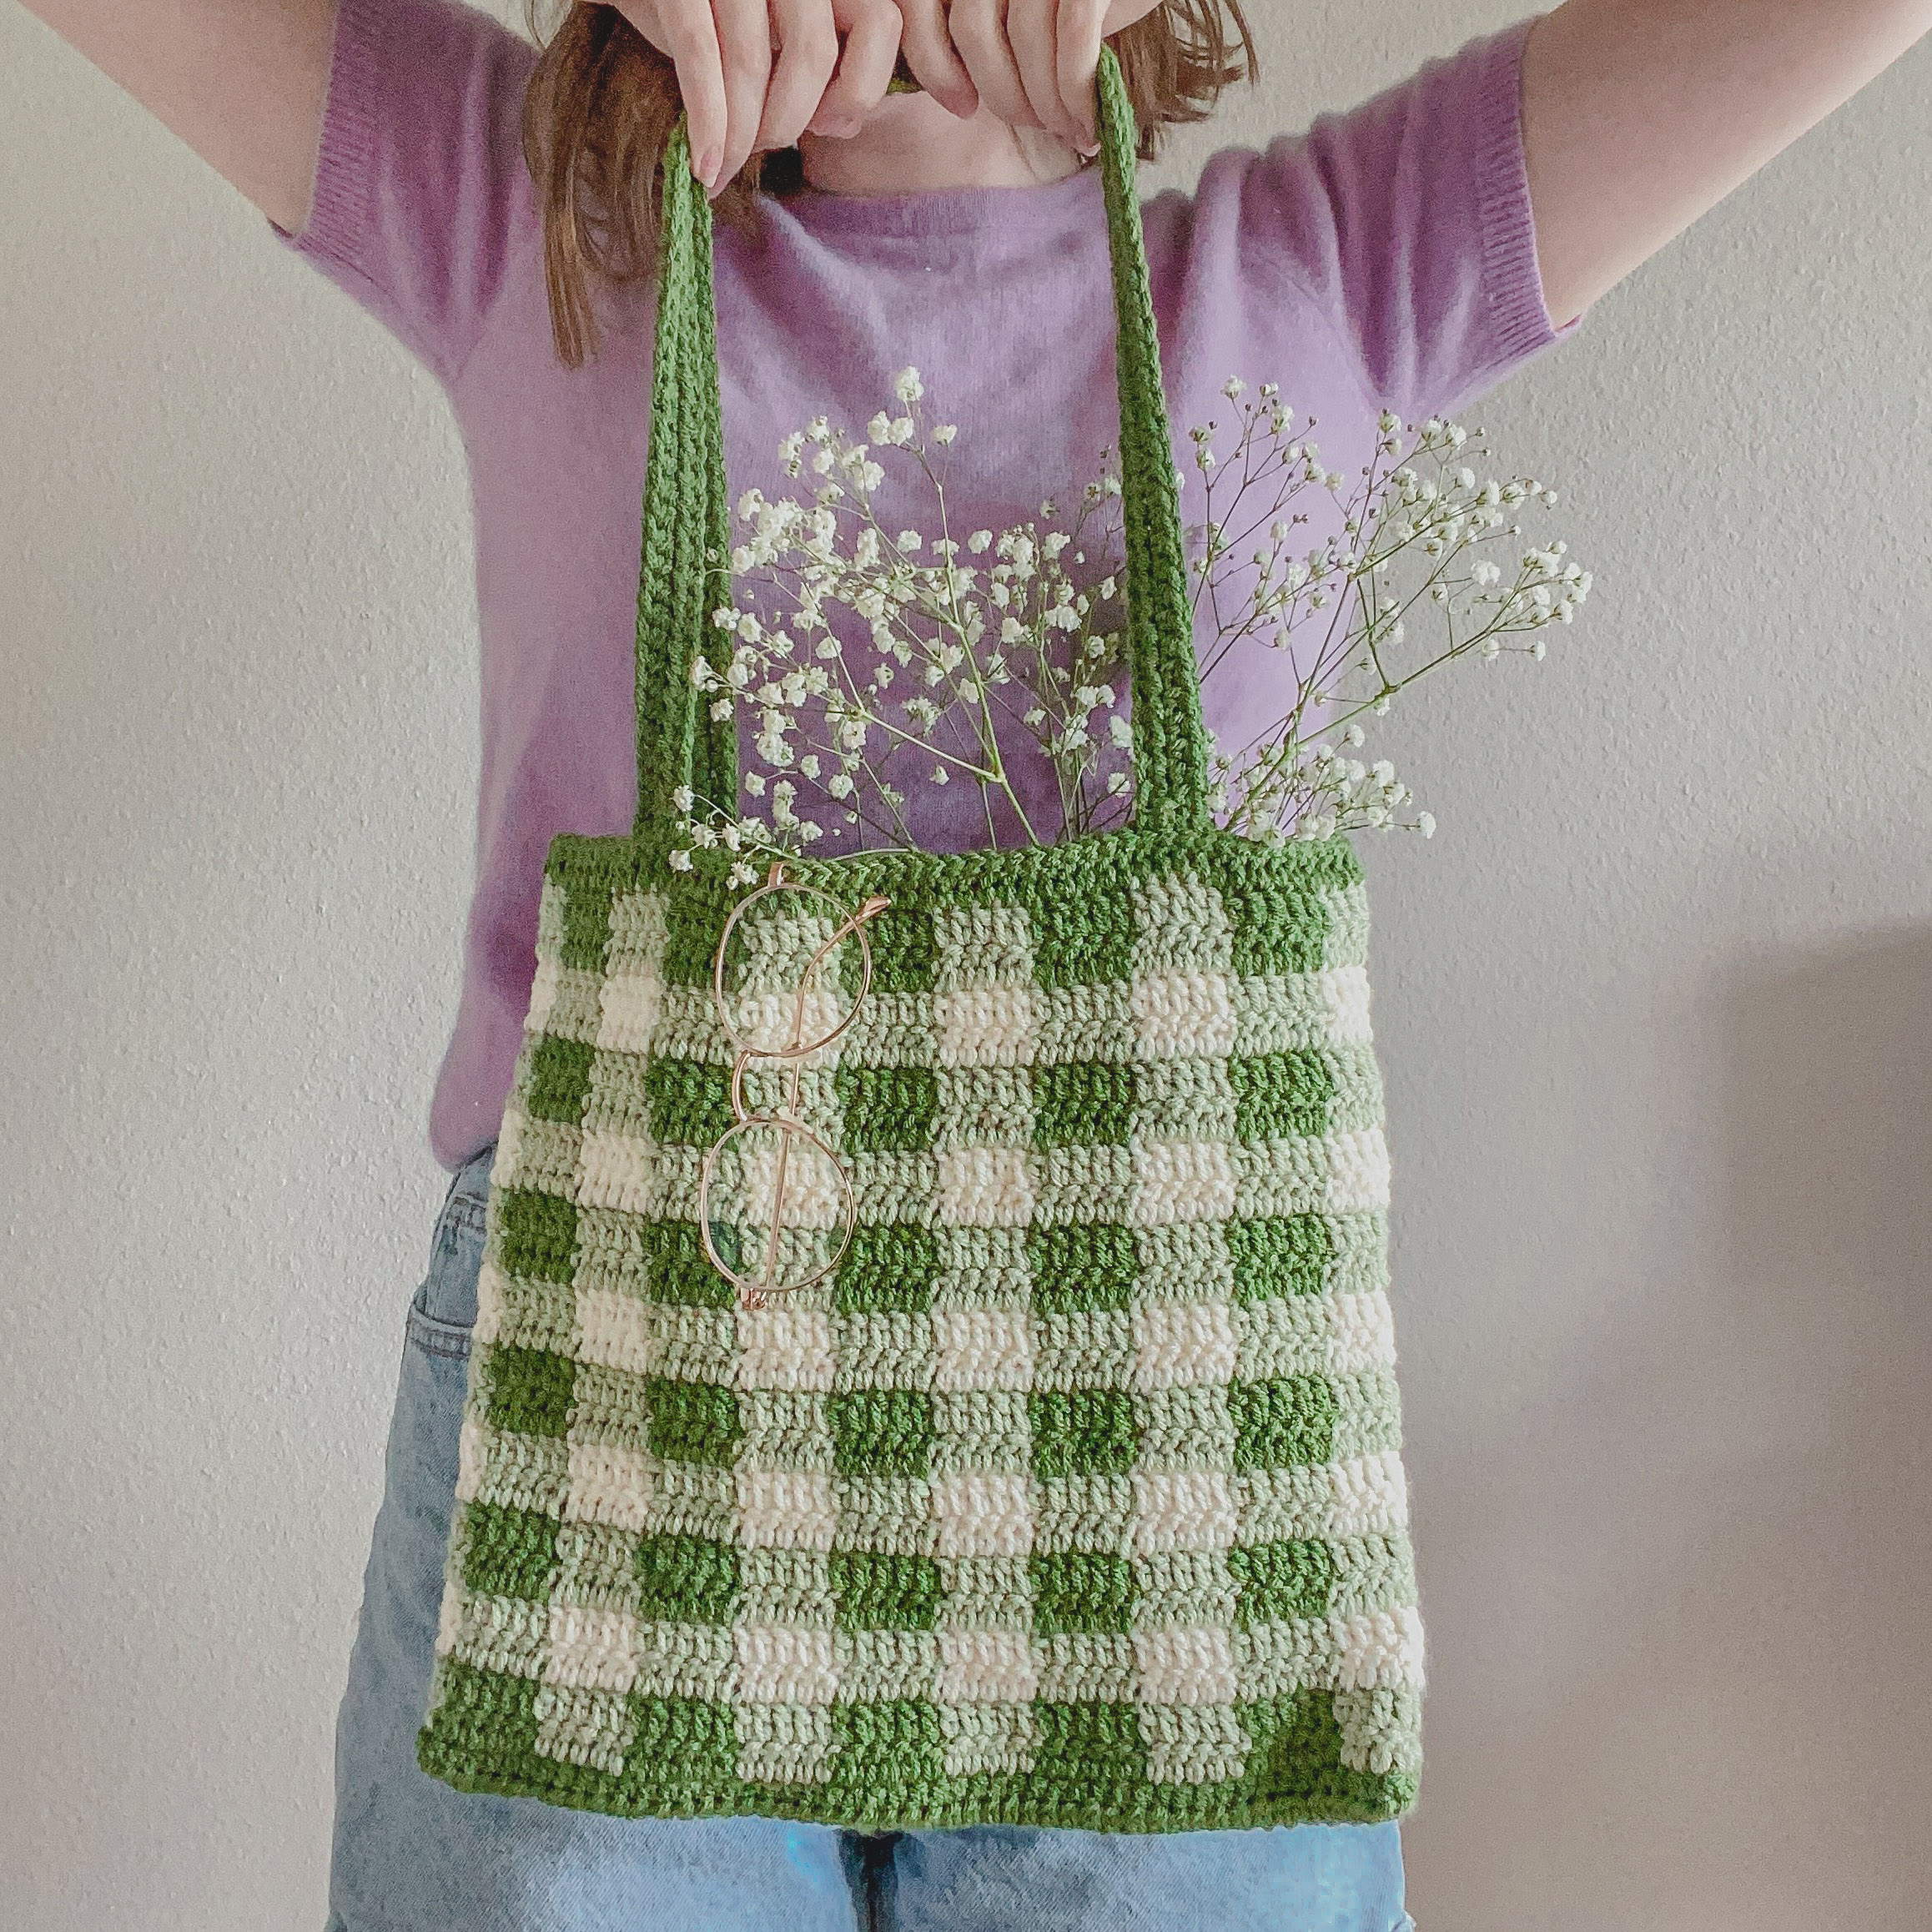 Summer bag crochet pattern | Summer bags crochet, Crochet handbags patterns,  Bags